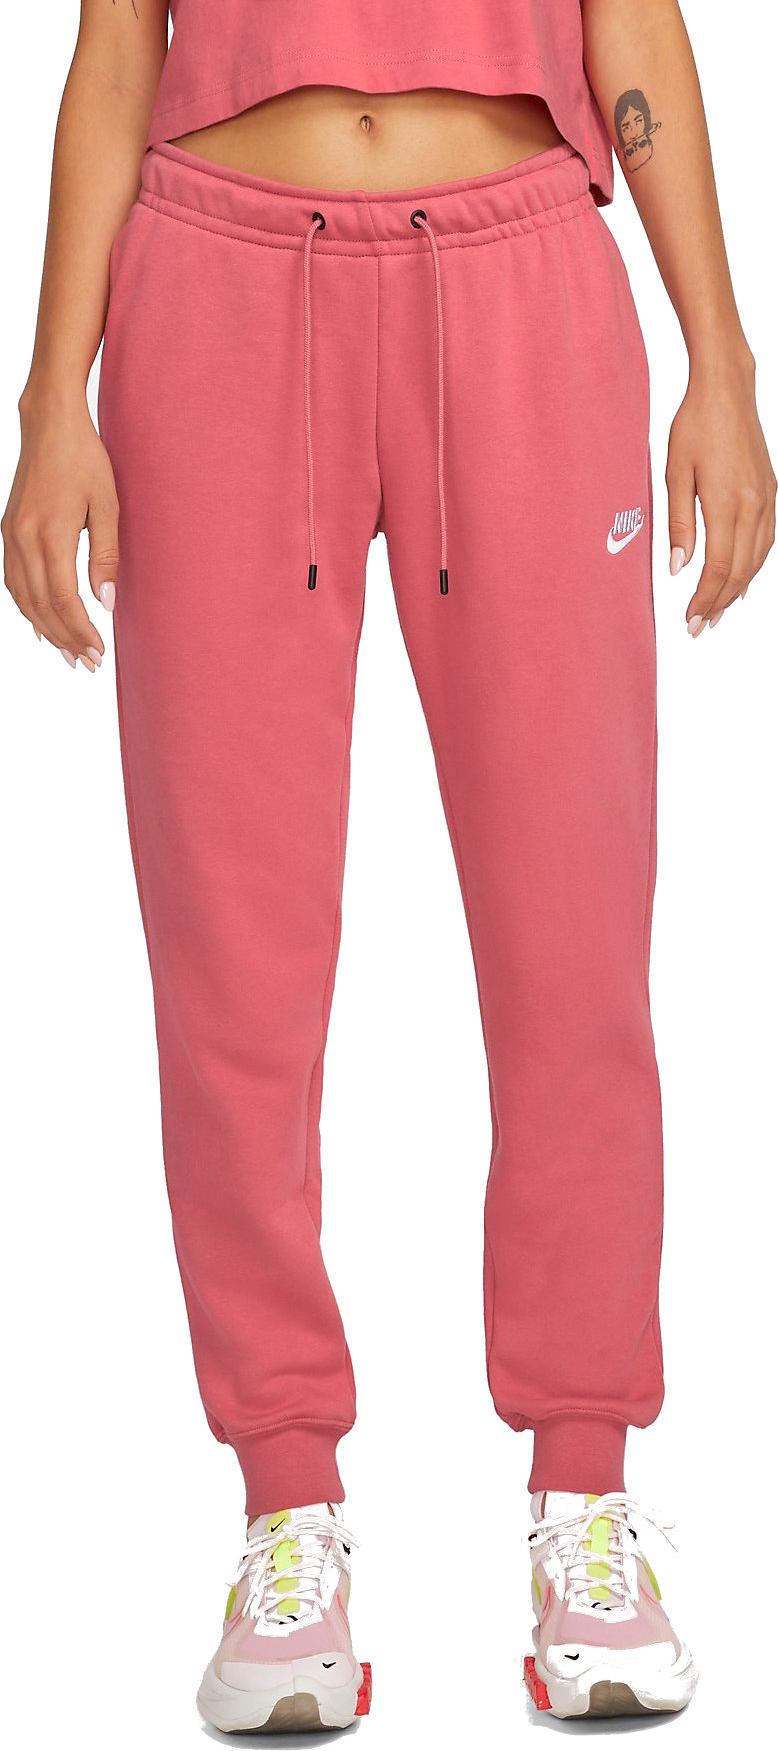 Fleece Pants Sportswear Nike s Essential Women